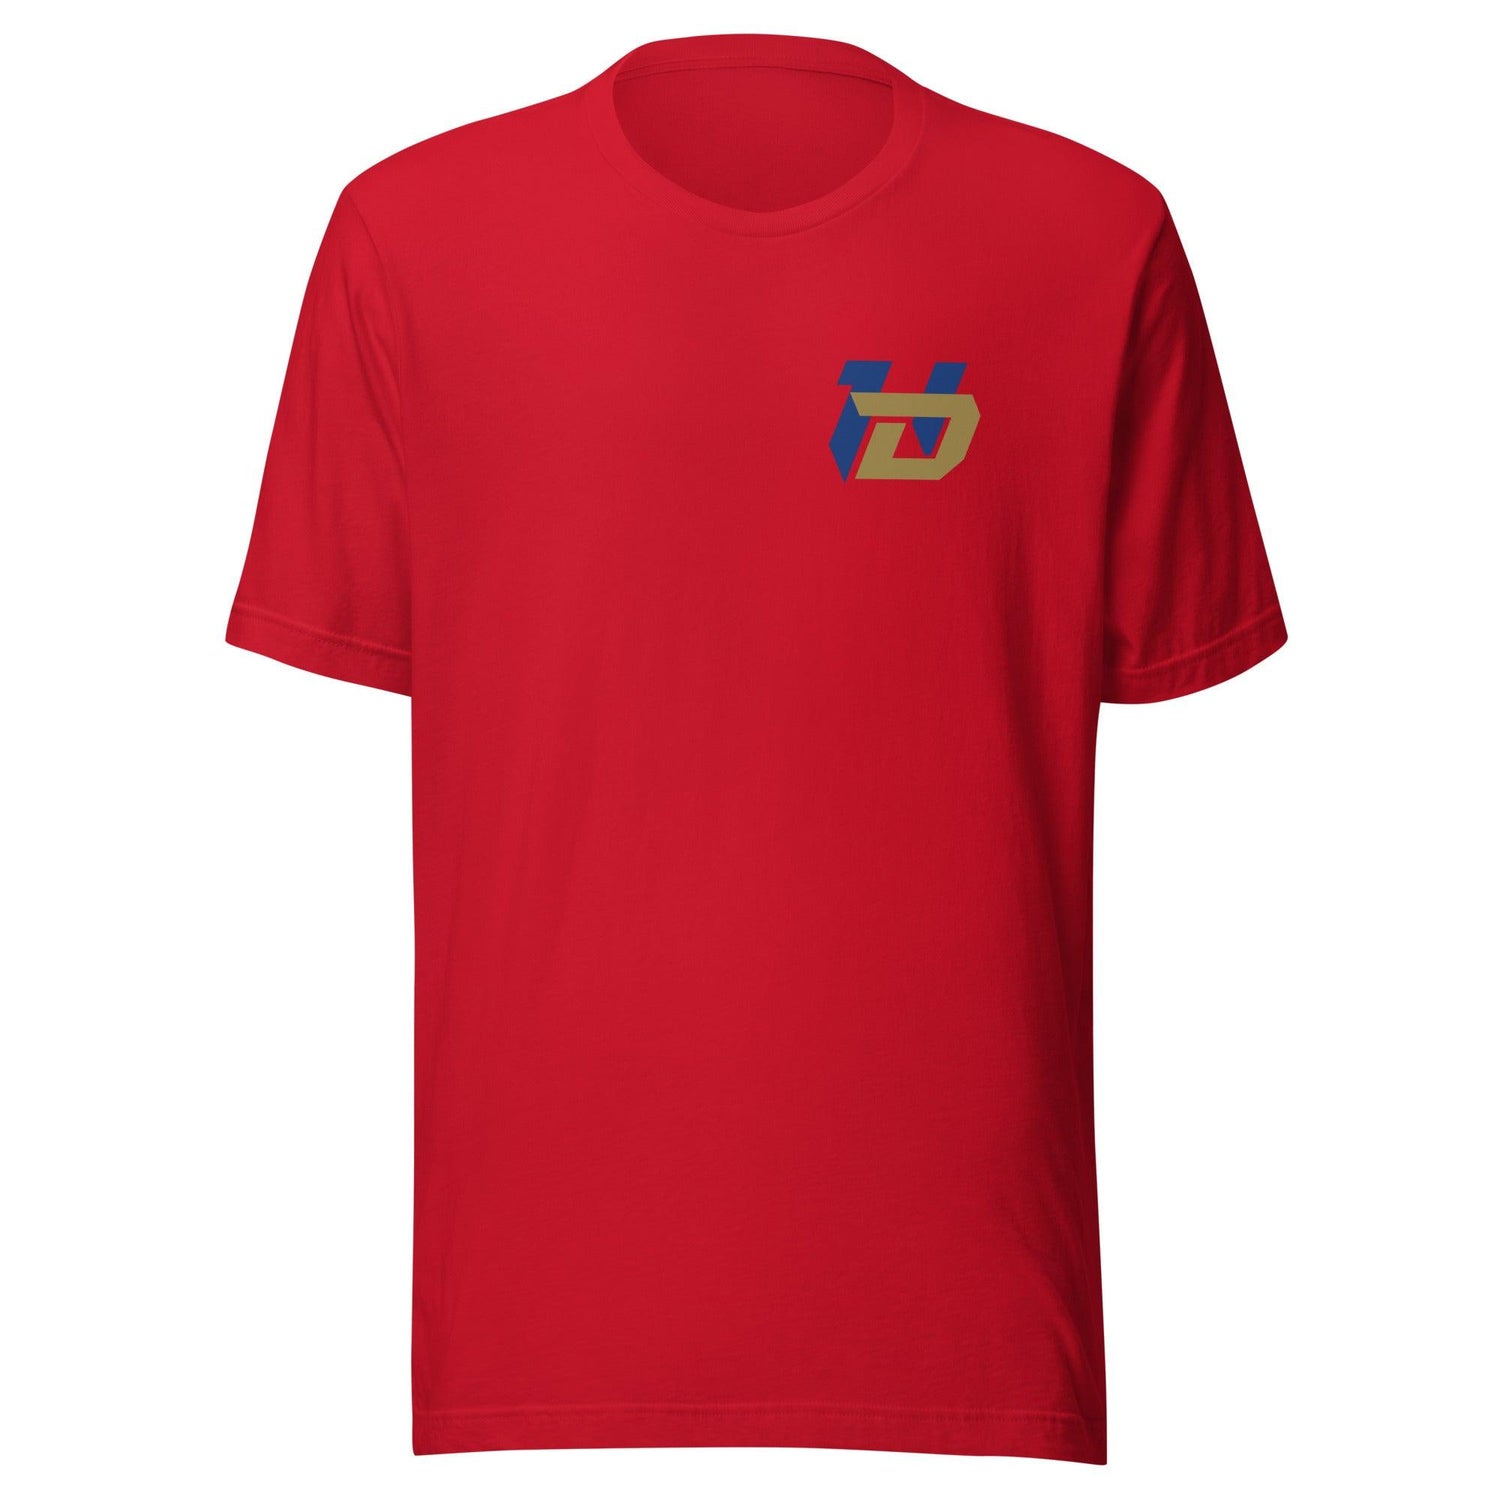 Demerio Houston "Essential" t-shirt - Fan Arch